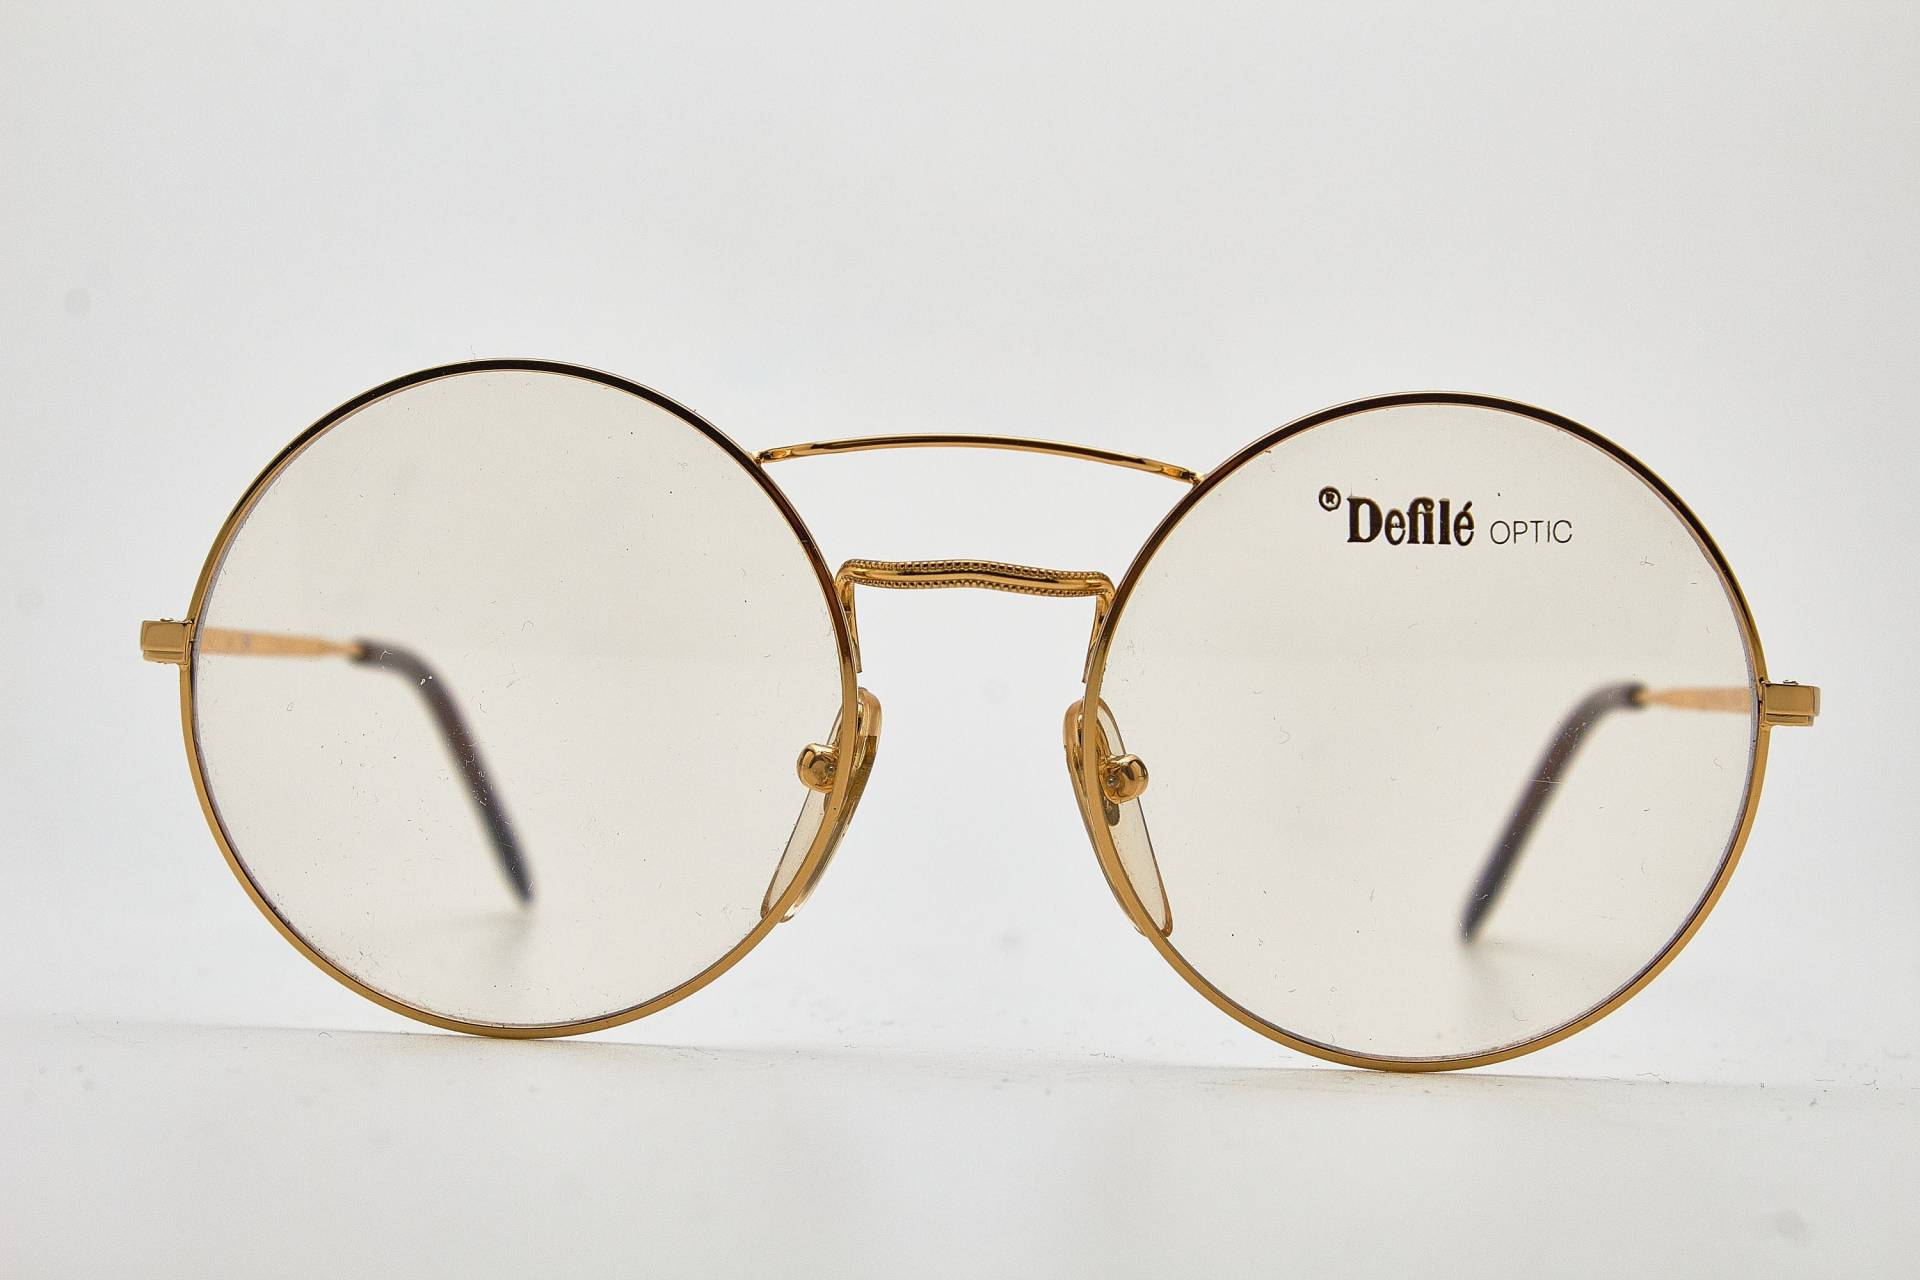 Defile Optic Piper 84 50 Gold Metall Runde Brille/Hipster Brille/Runde Brille/Vintage Brille 1980Er Jahre Sonnenbrille/Runde von VintageGlassesVault